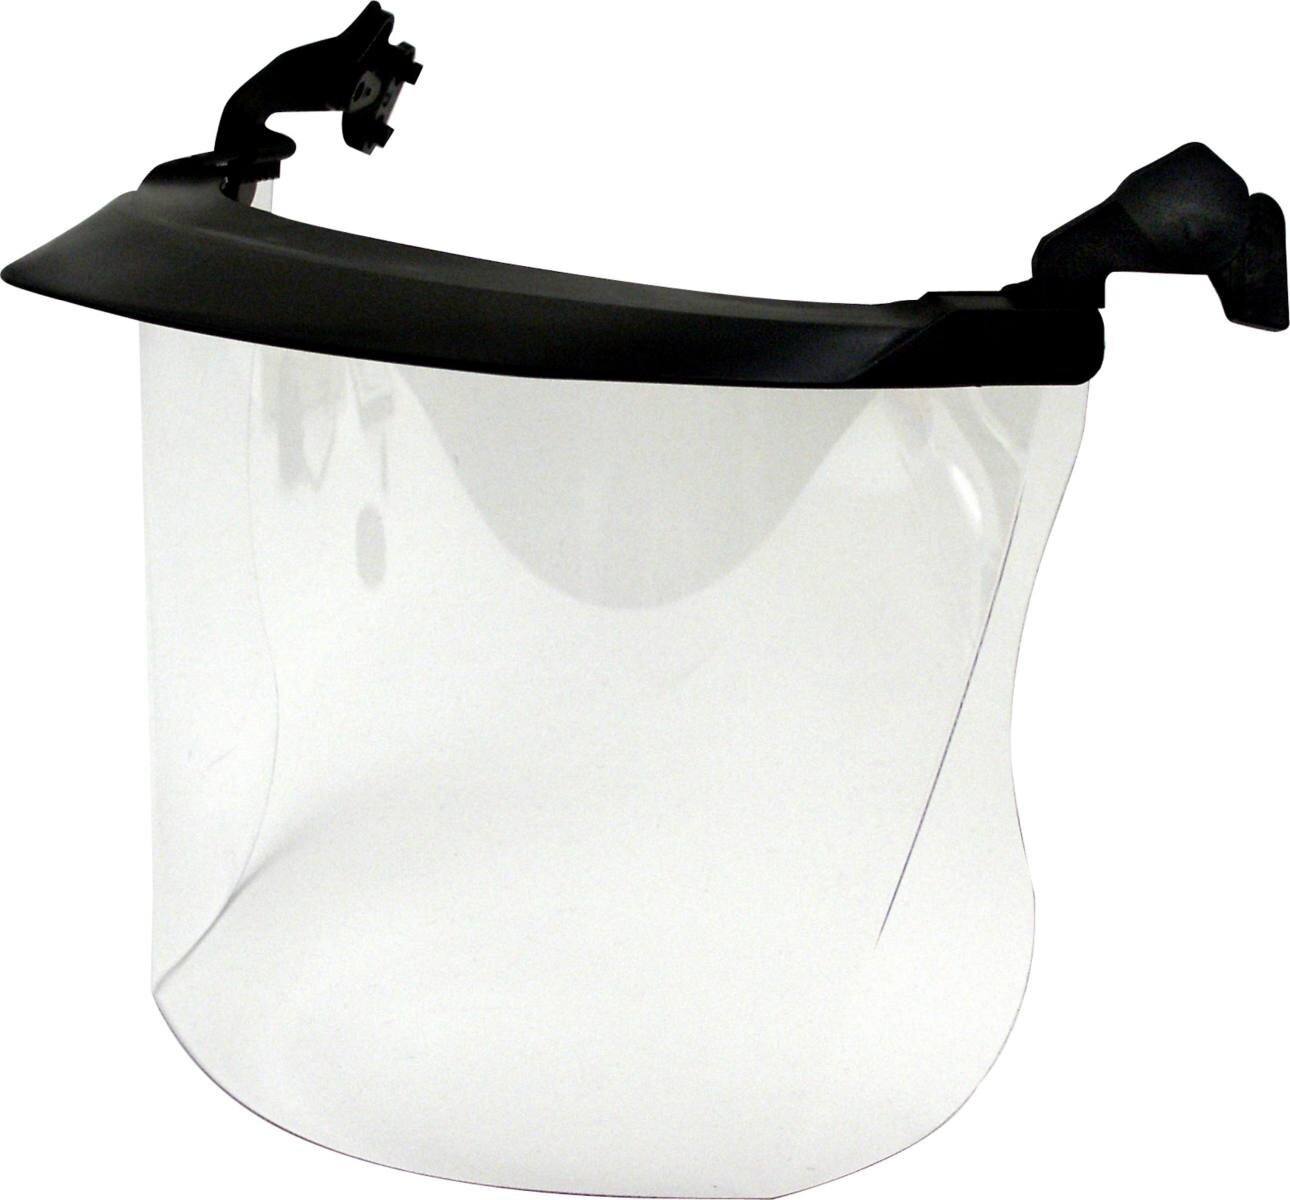 Visiera trasparente 3M V4F in policarbonato con schermi parasole, estremamente resistente agli urti e ai graffi, spessore: 1 mm, peso: 110 g (incluso supporto per casco)